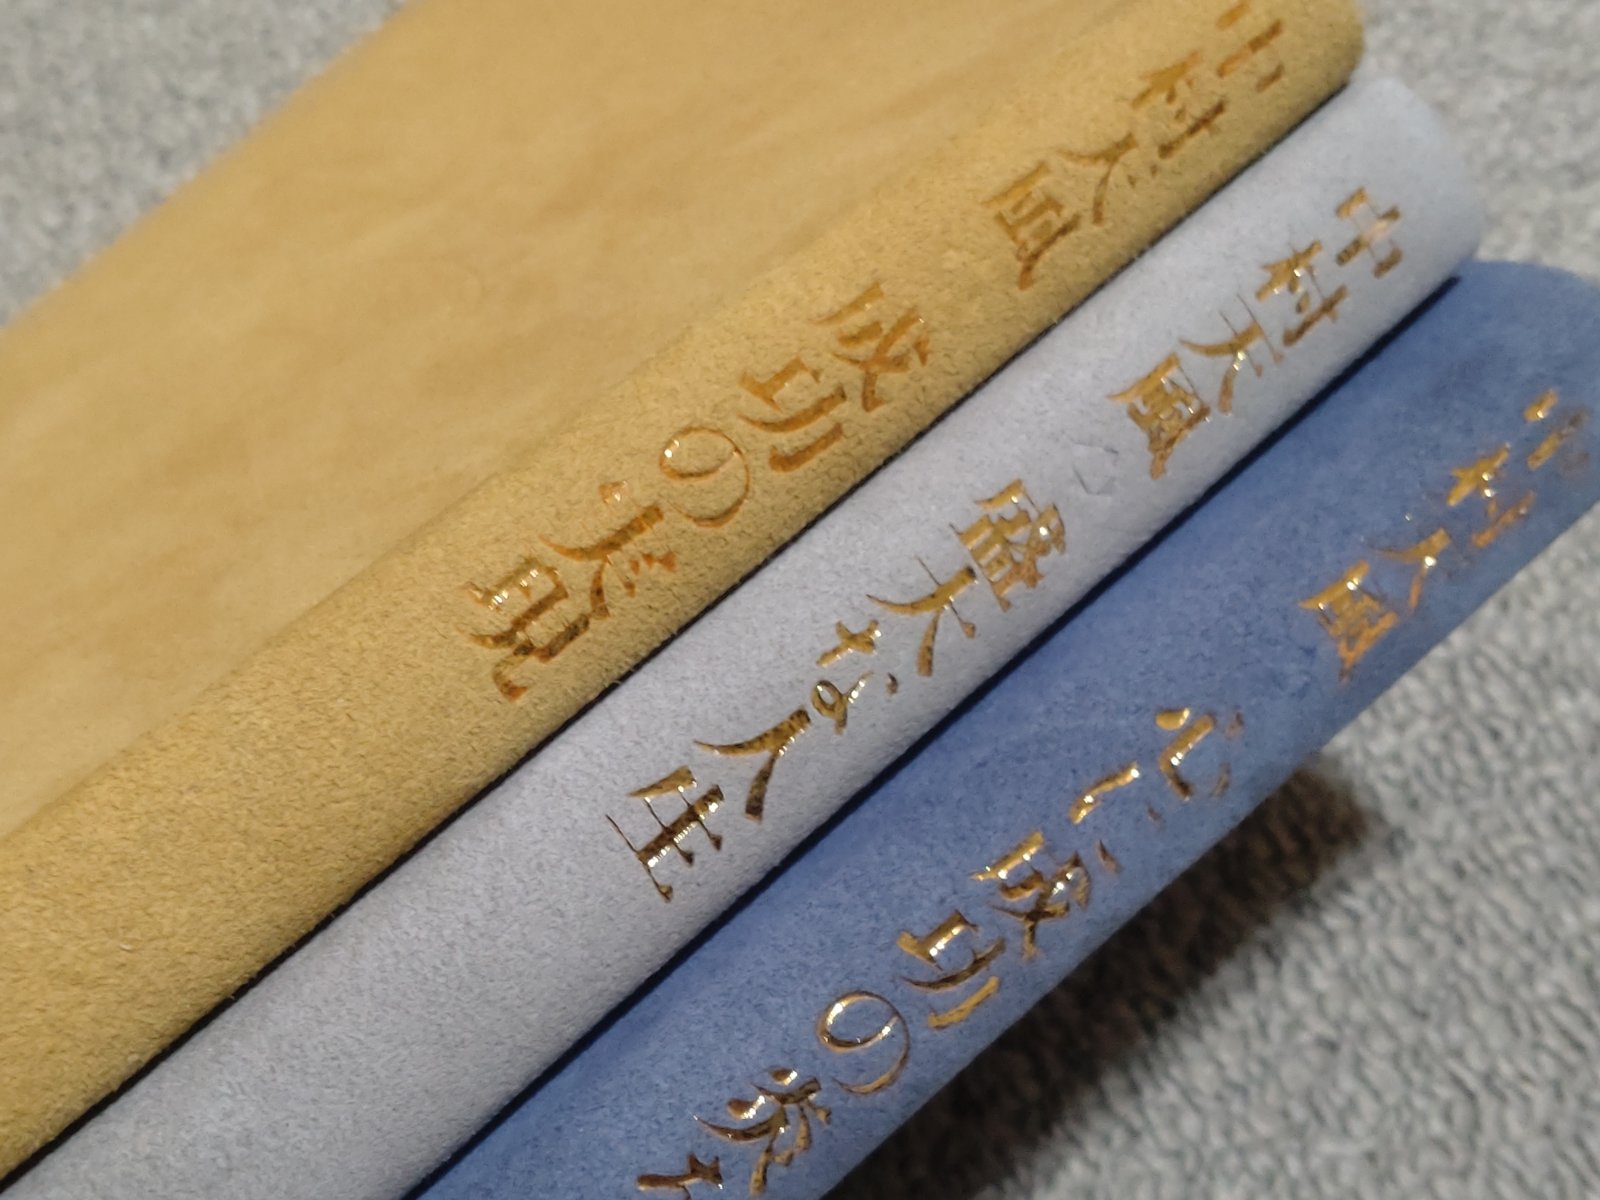 中村天風『成功の実現』という3万円の本を購入し何度も読んだので感想 ...